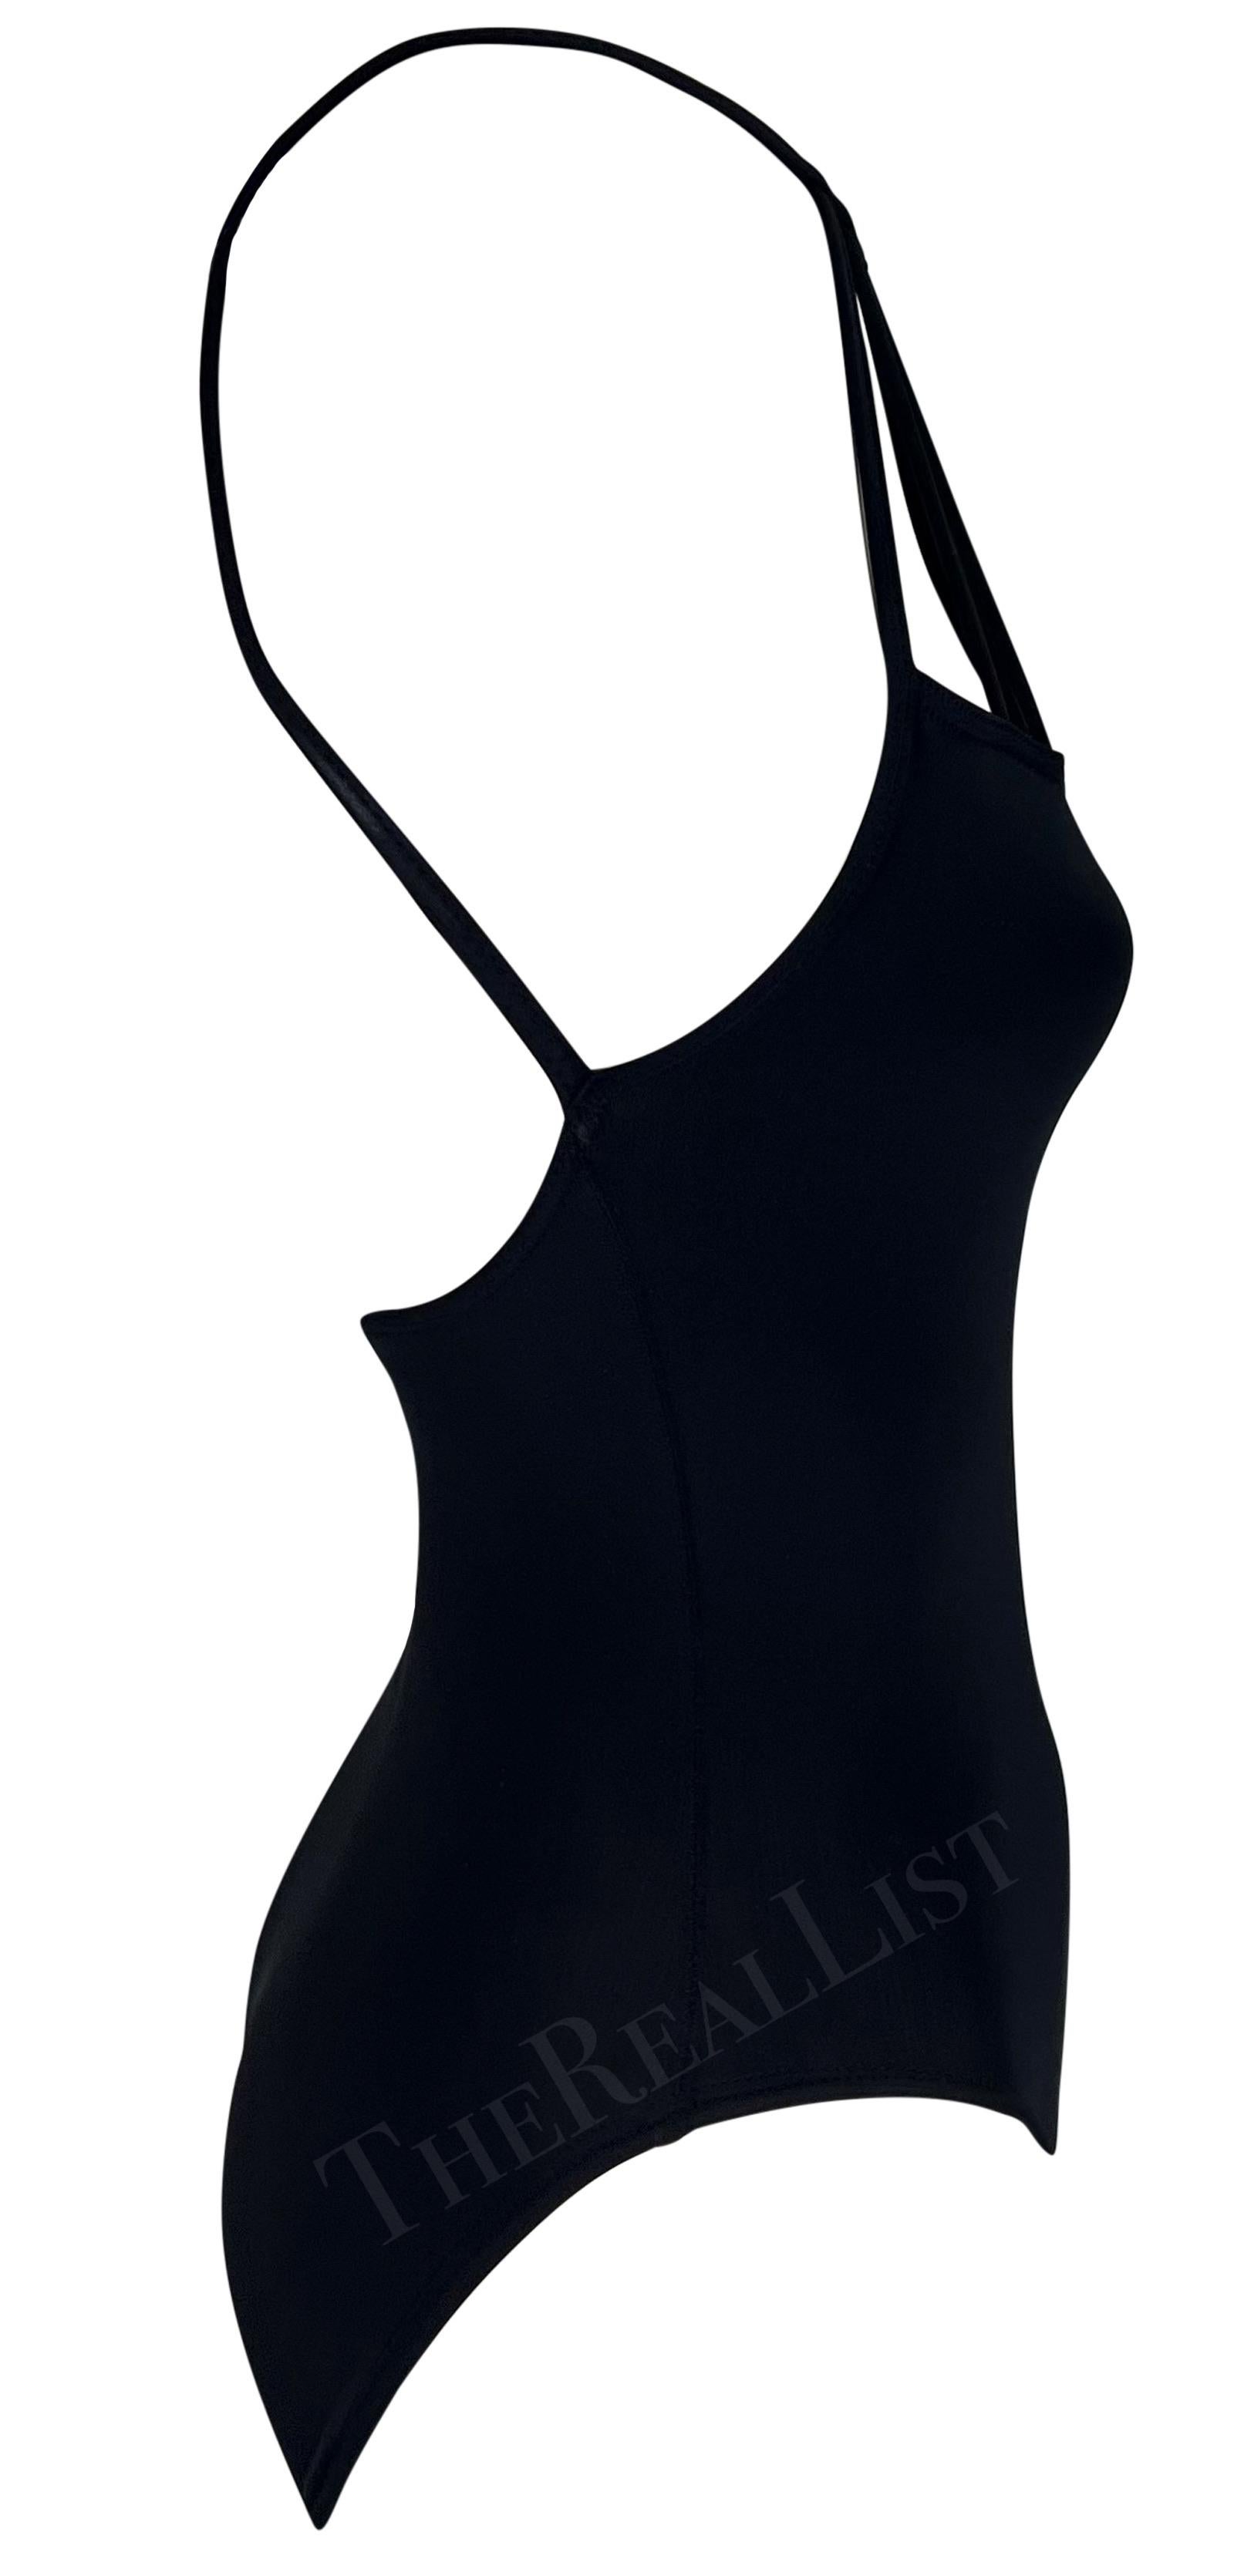 S/S 1998 Herve Leger Black One Piece Body Suit Swimsuit Bodysuit For Sale 3